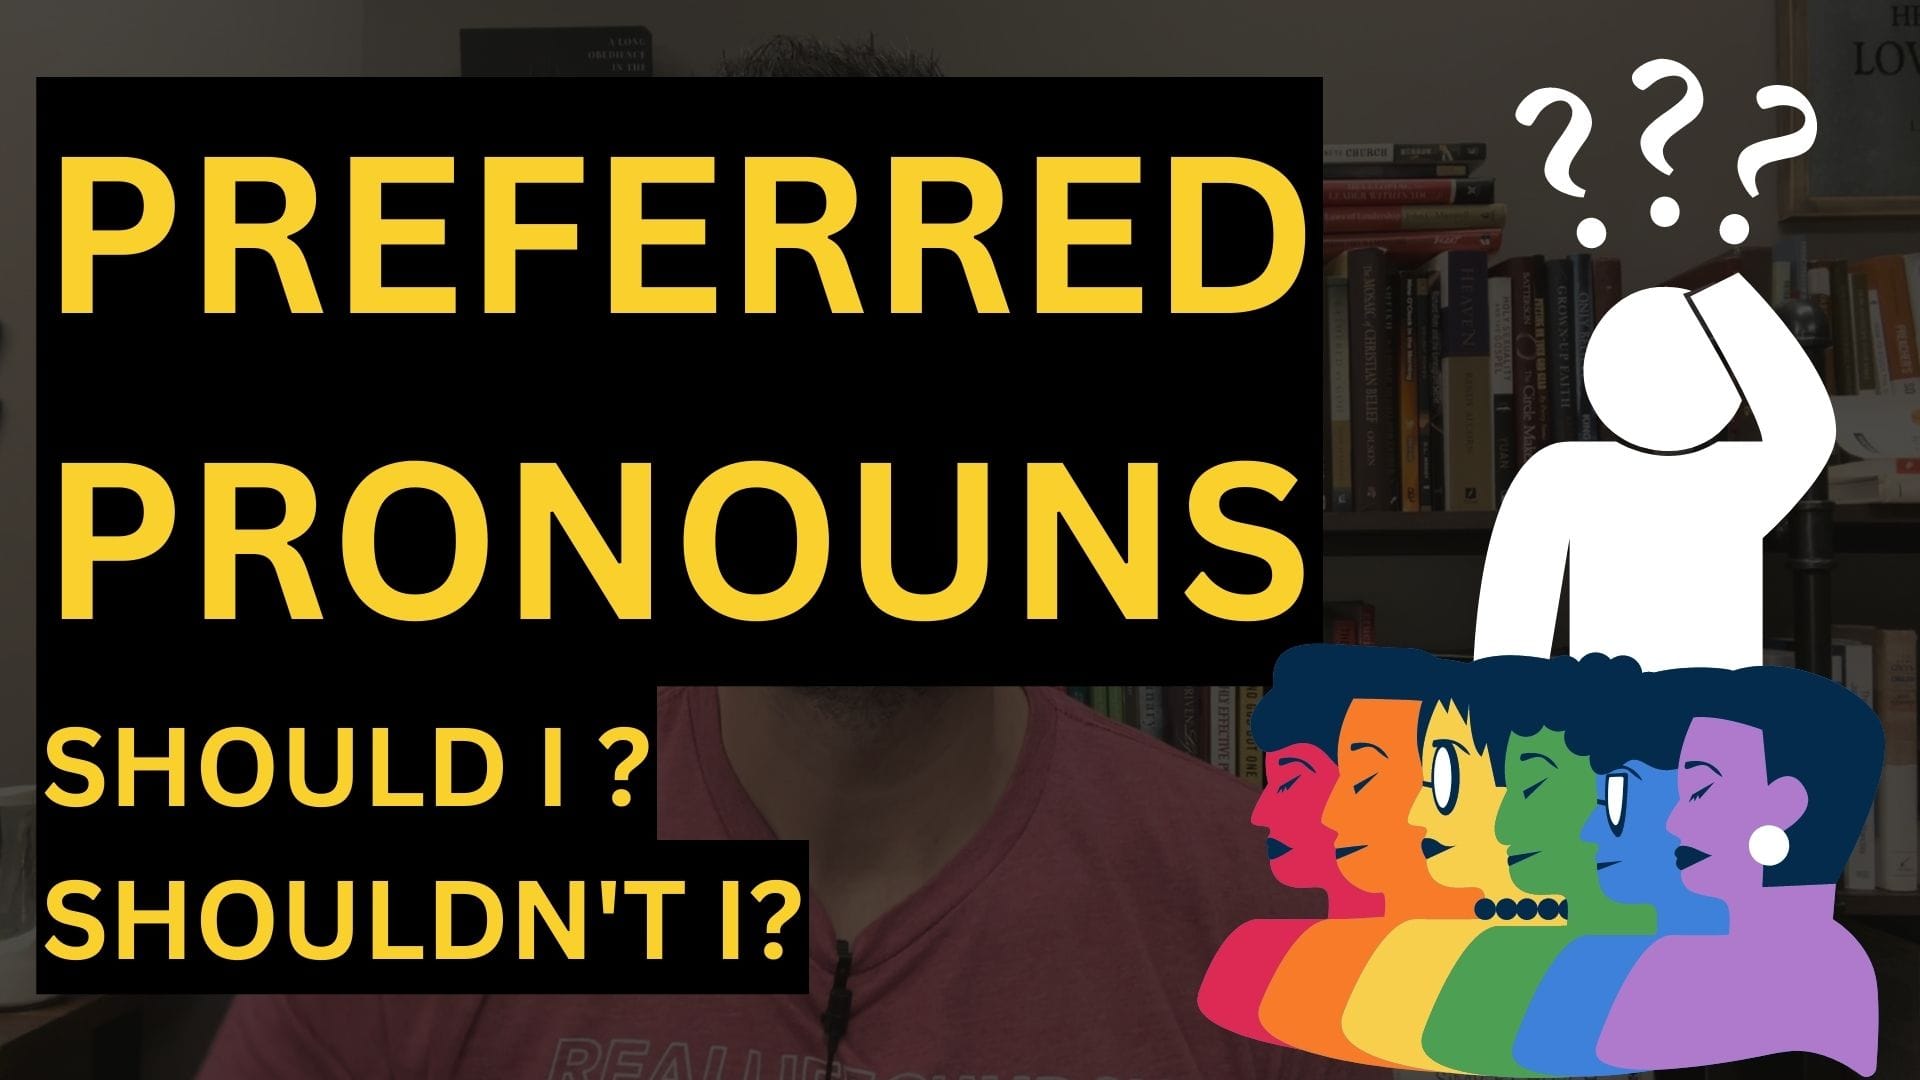 Should I Use Someone's Preferred Pronouns? 🏳️‍🌈